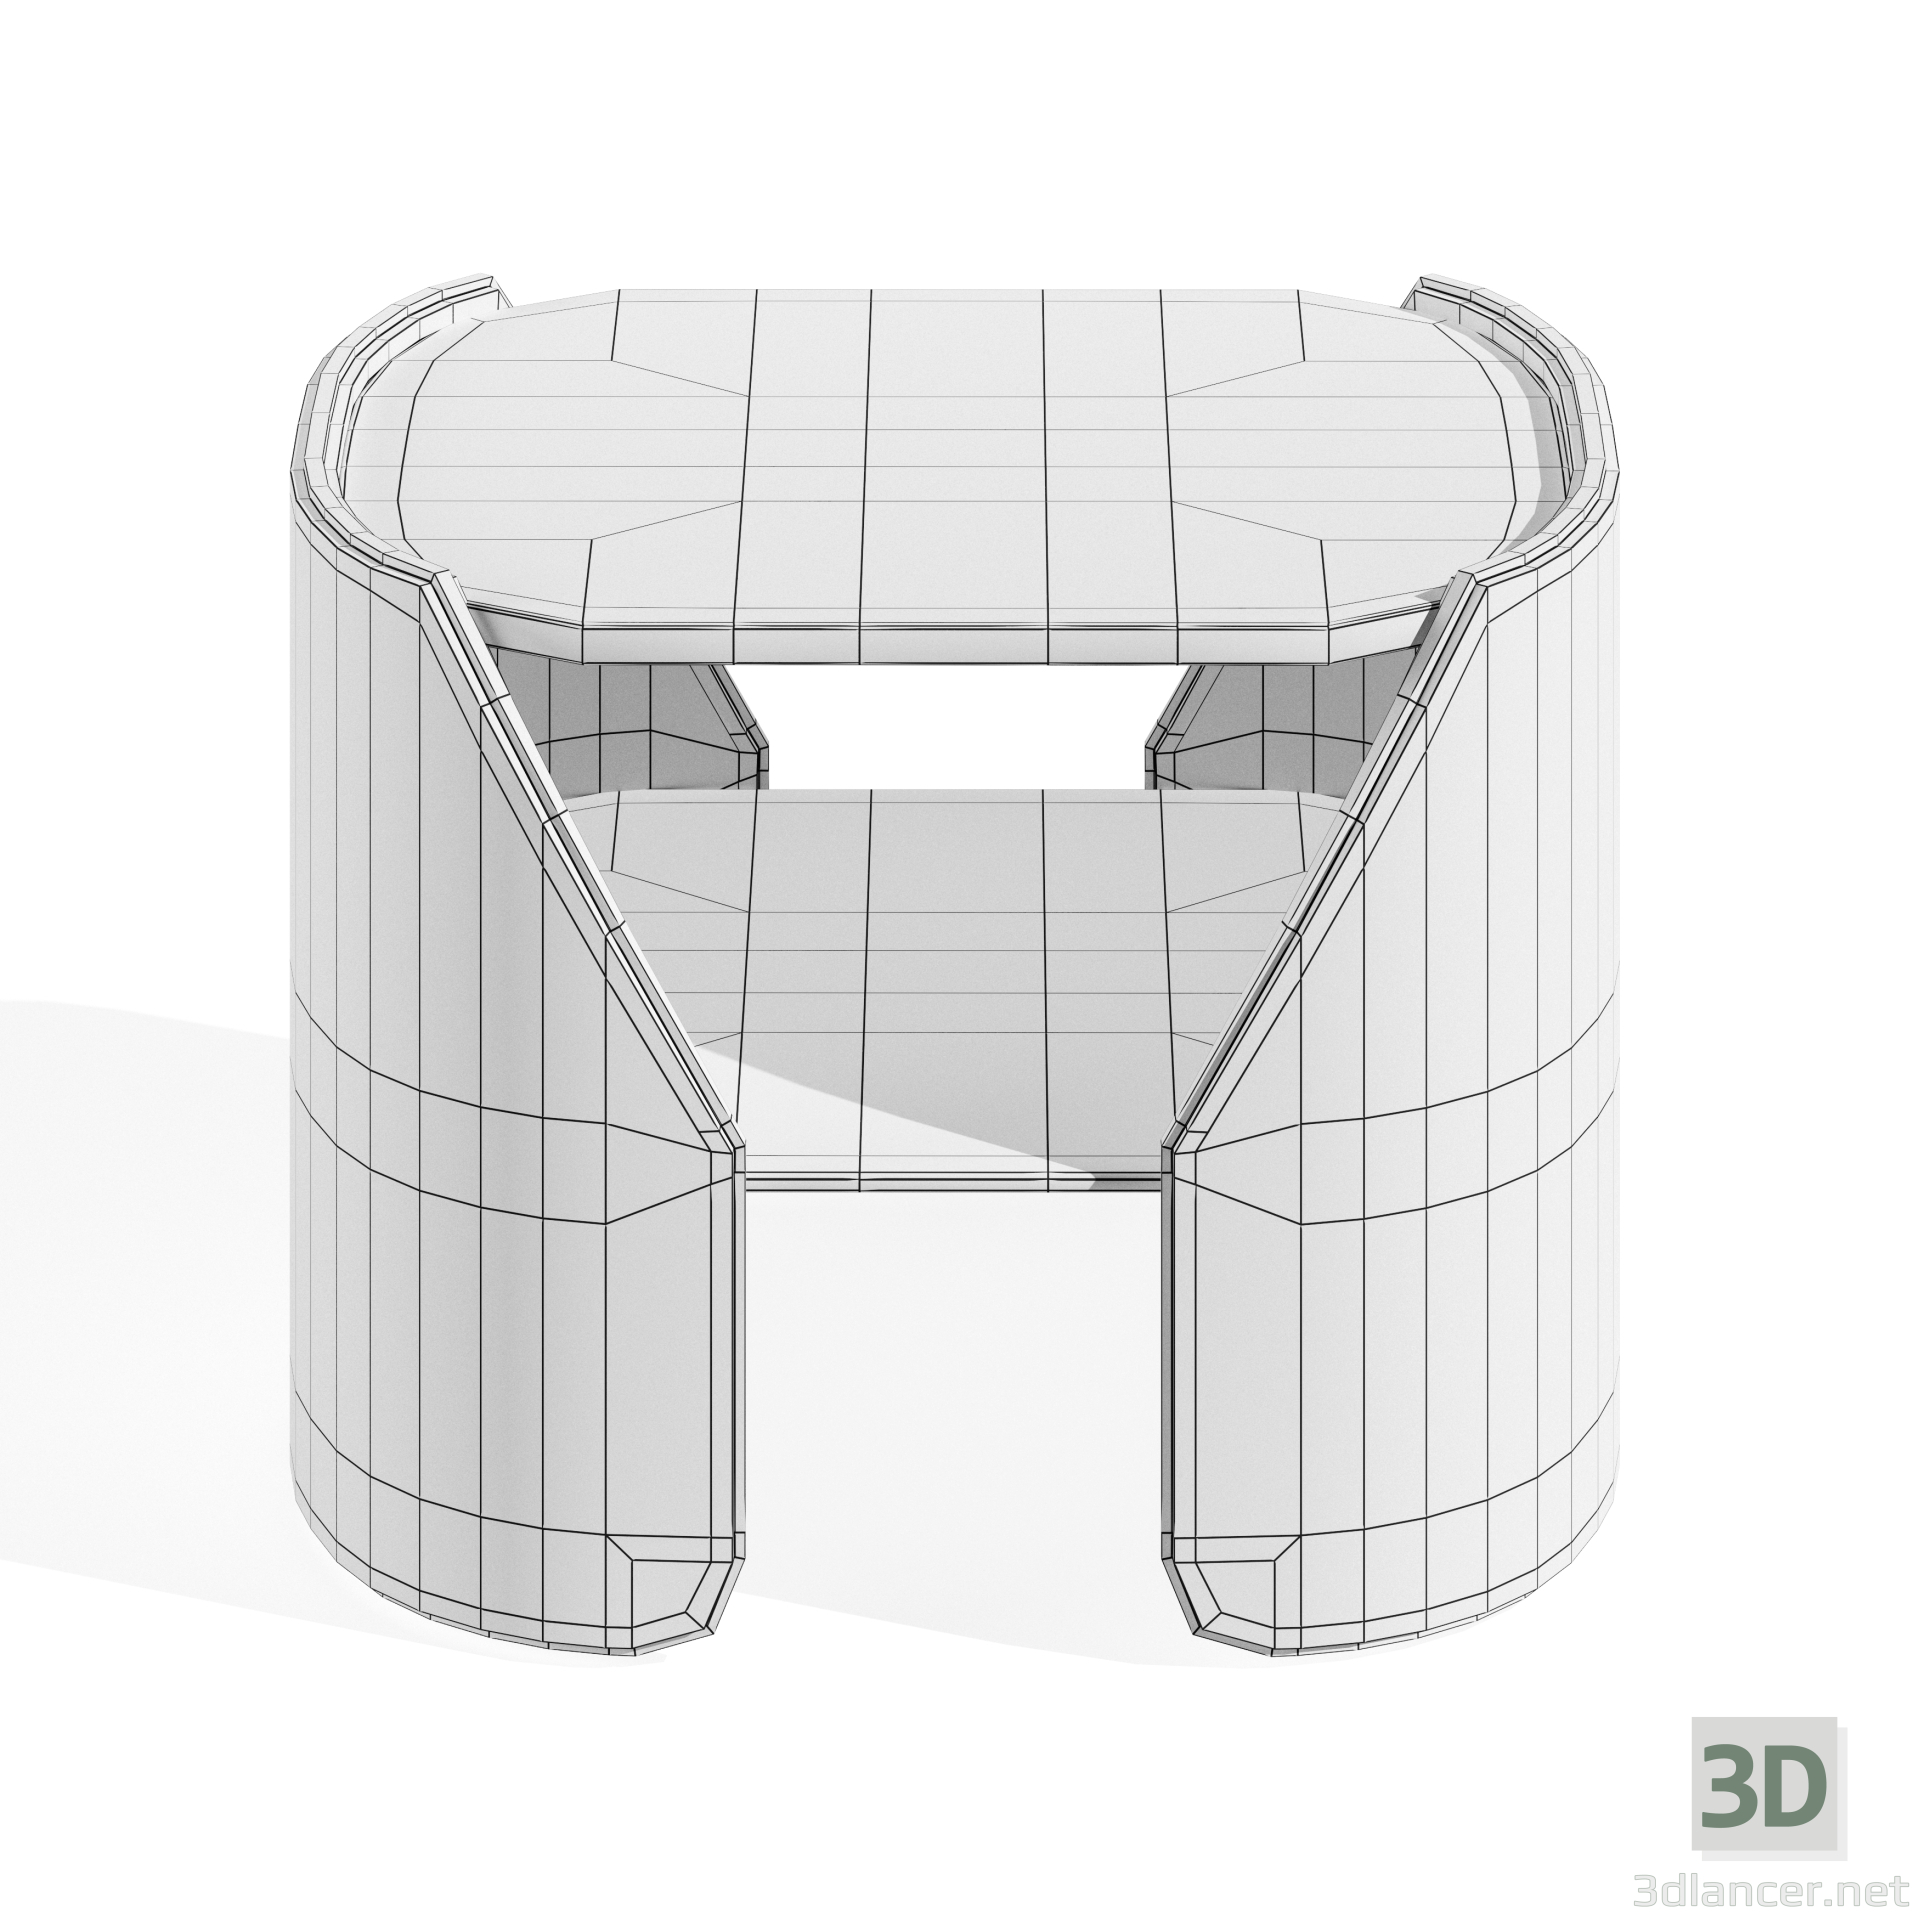 MESA BAJA FITZGERALD 3D modelo Compro - render